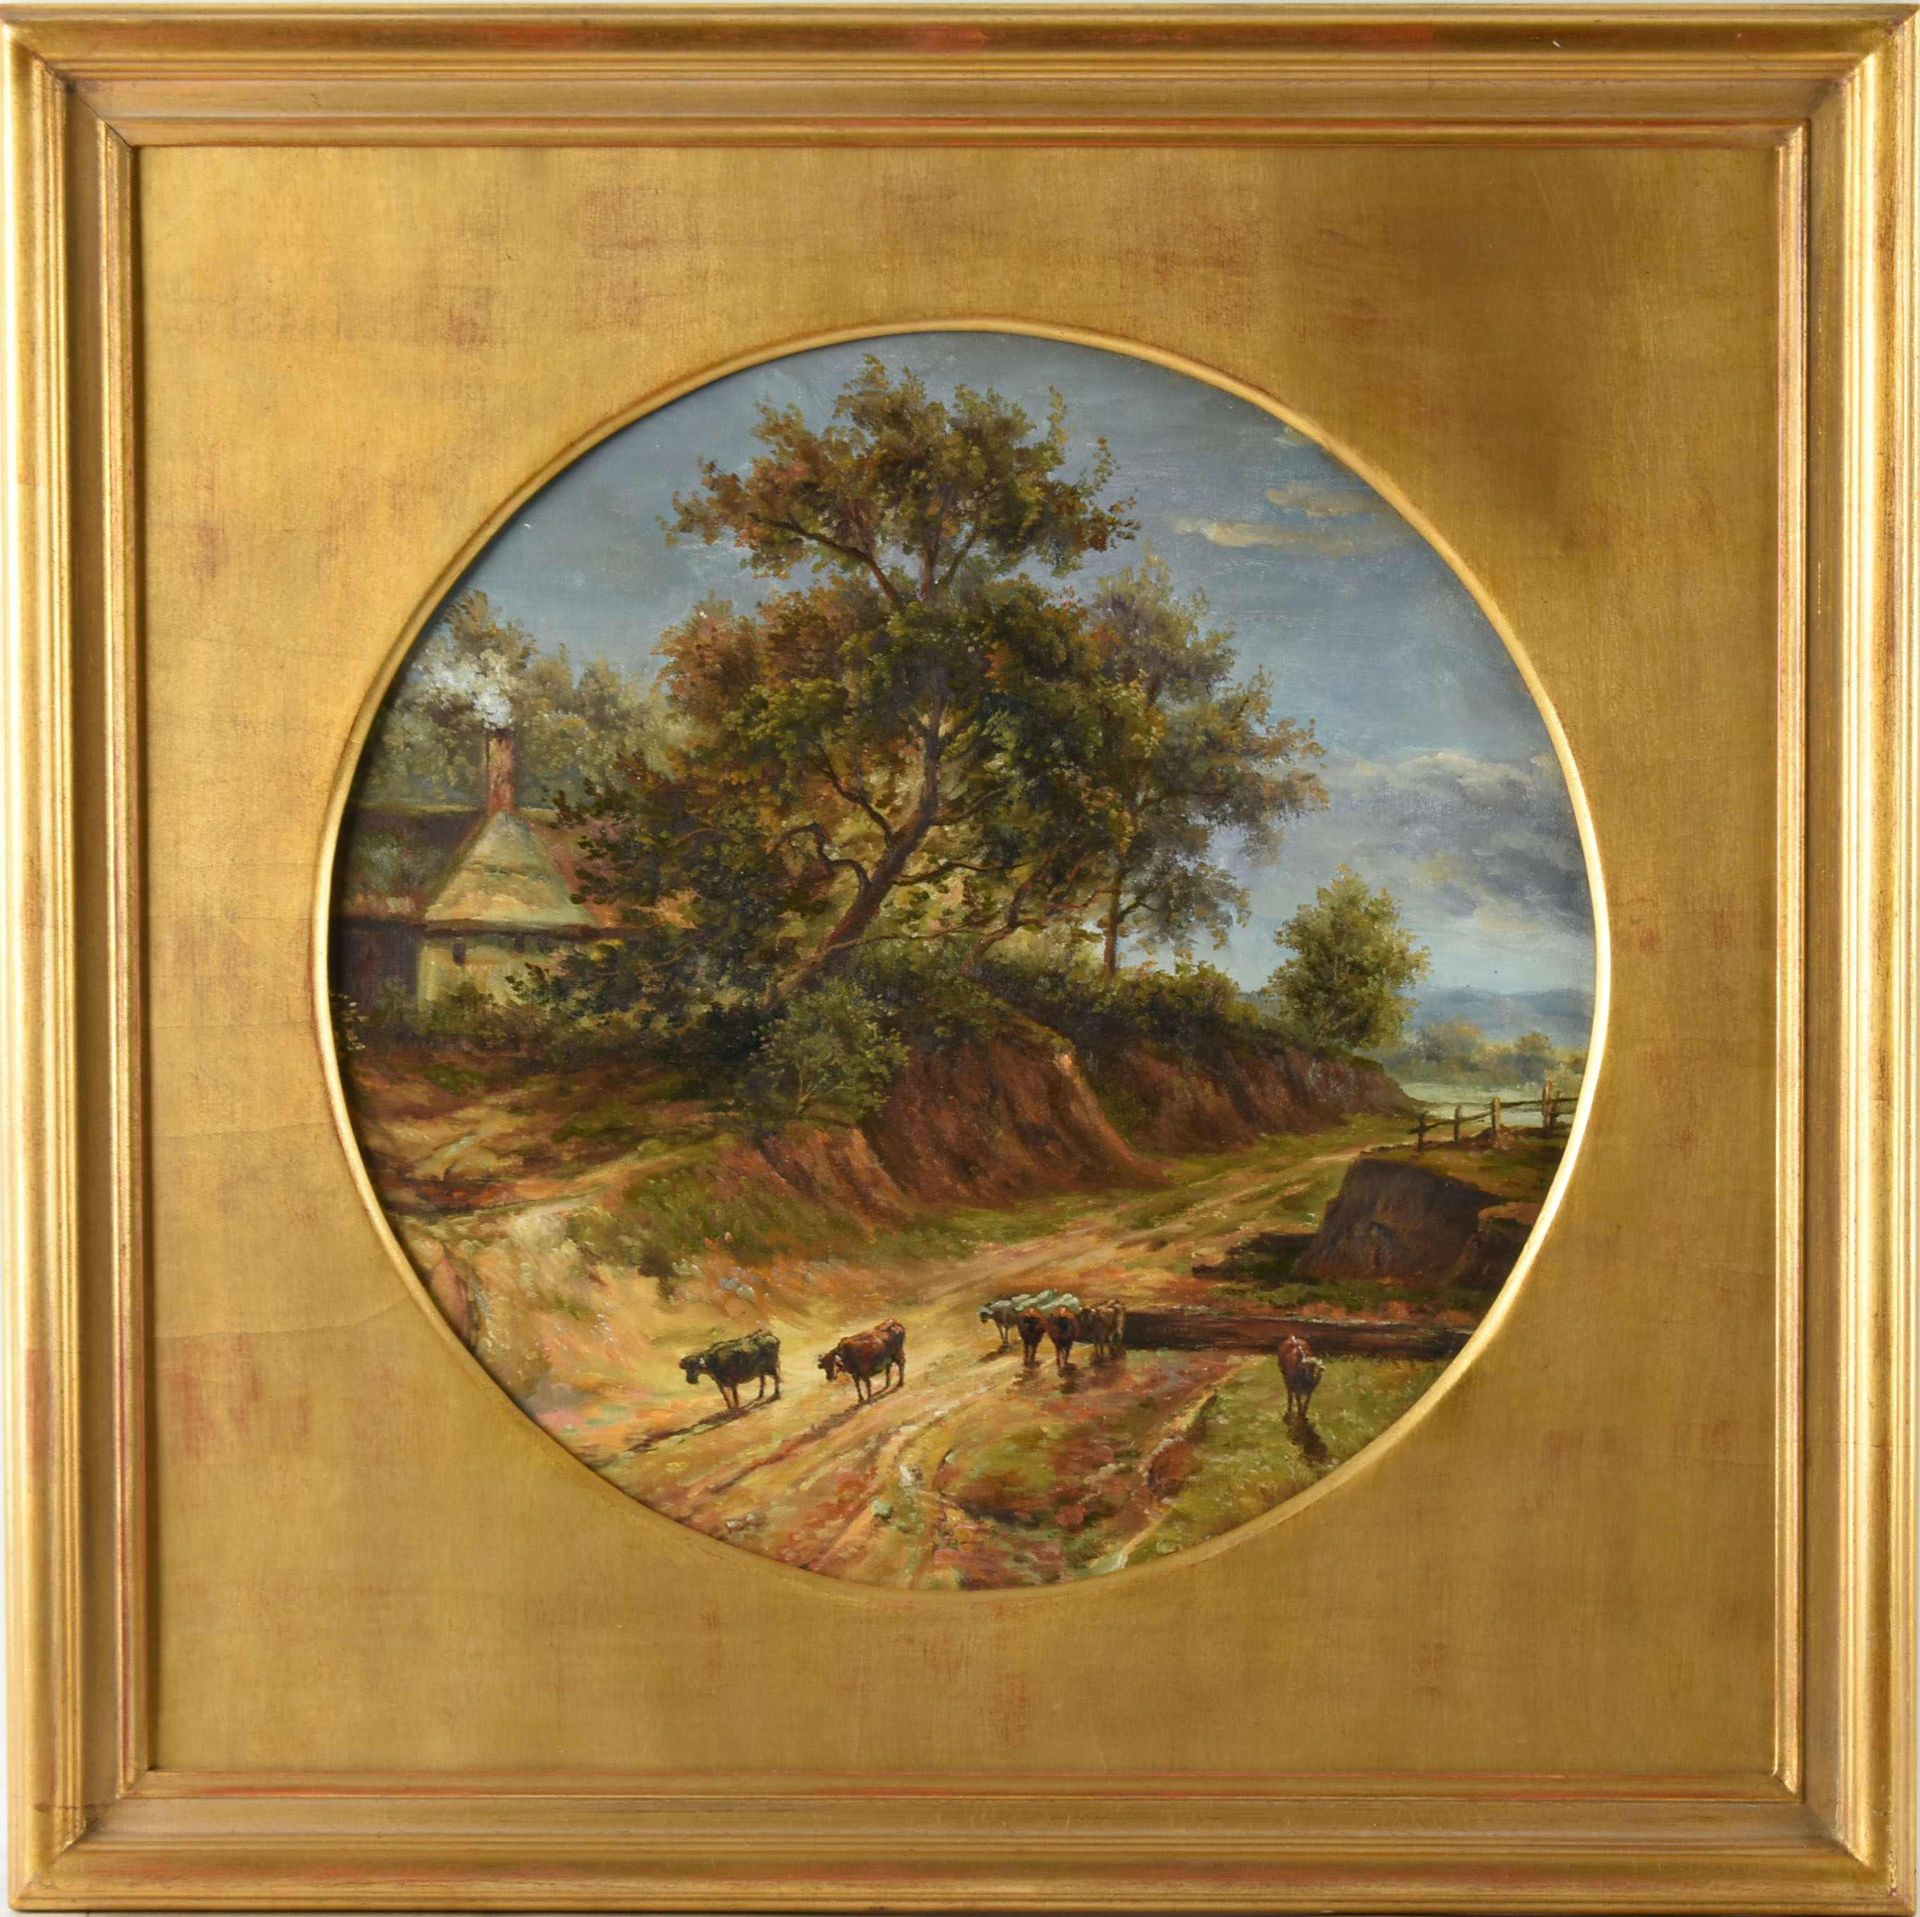 Engsbach, M. Öl/Lwd. auf Holz kaschiert, Landschaft mit Weg und Rindern, rückseitig Künstlerhinweis, - Bild 3 aus 3